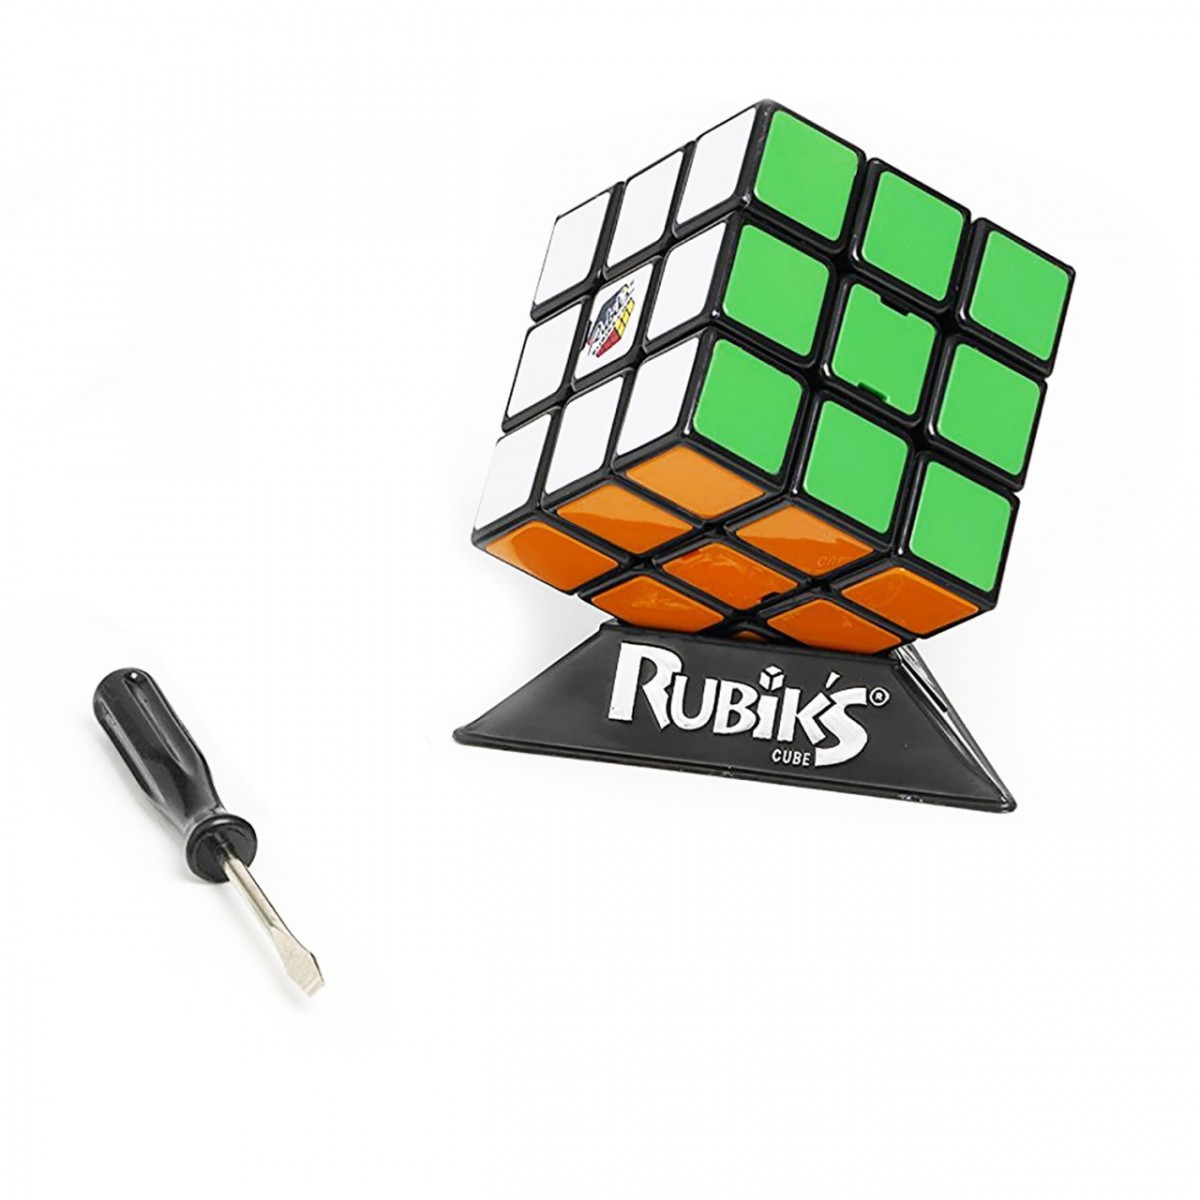 7+. Данный набор позволяет ребенку самостоятельно собрать свой Кубик Рубика 3х3 во время сбор...